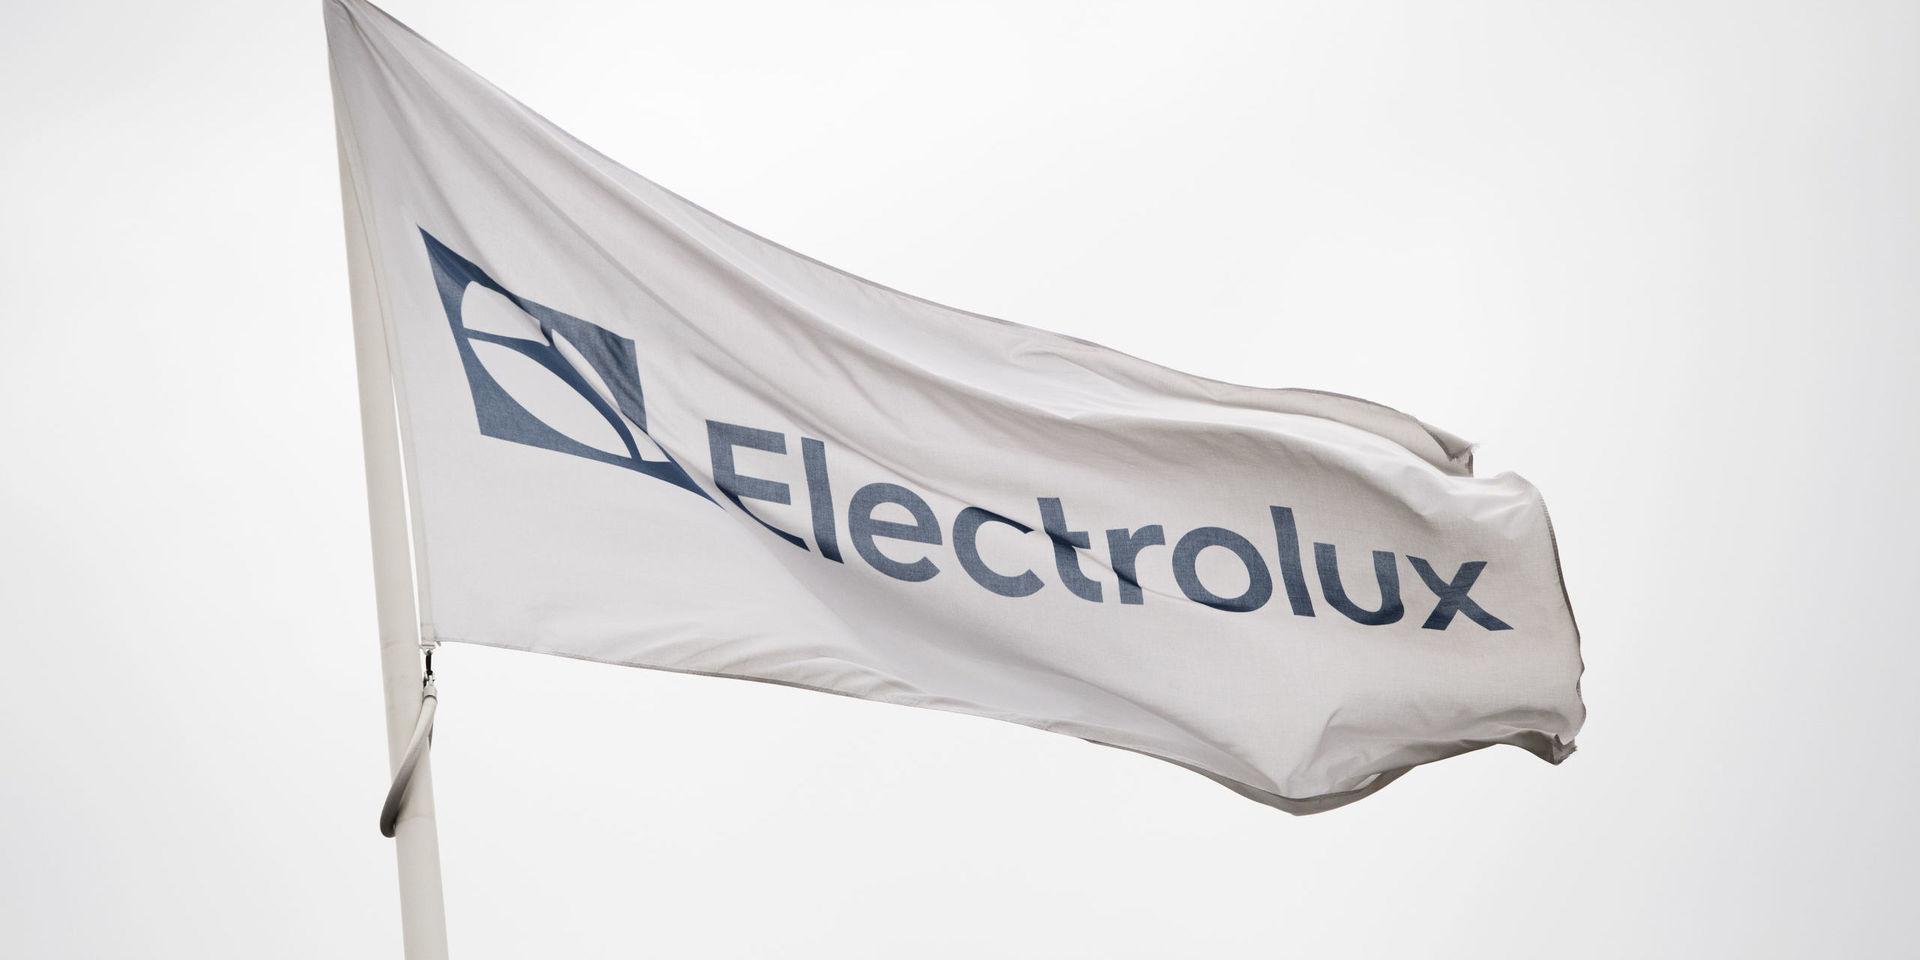 Vitvarujätten Electrolux vinstvarnar för det fjärde kvartalet sedan verksamheten i Nordamerika har fått oväntat höga kostnader. Arkivbild.